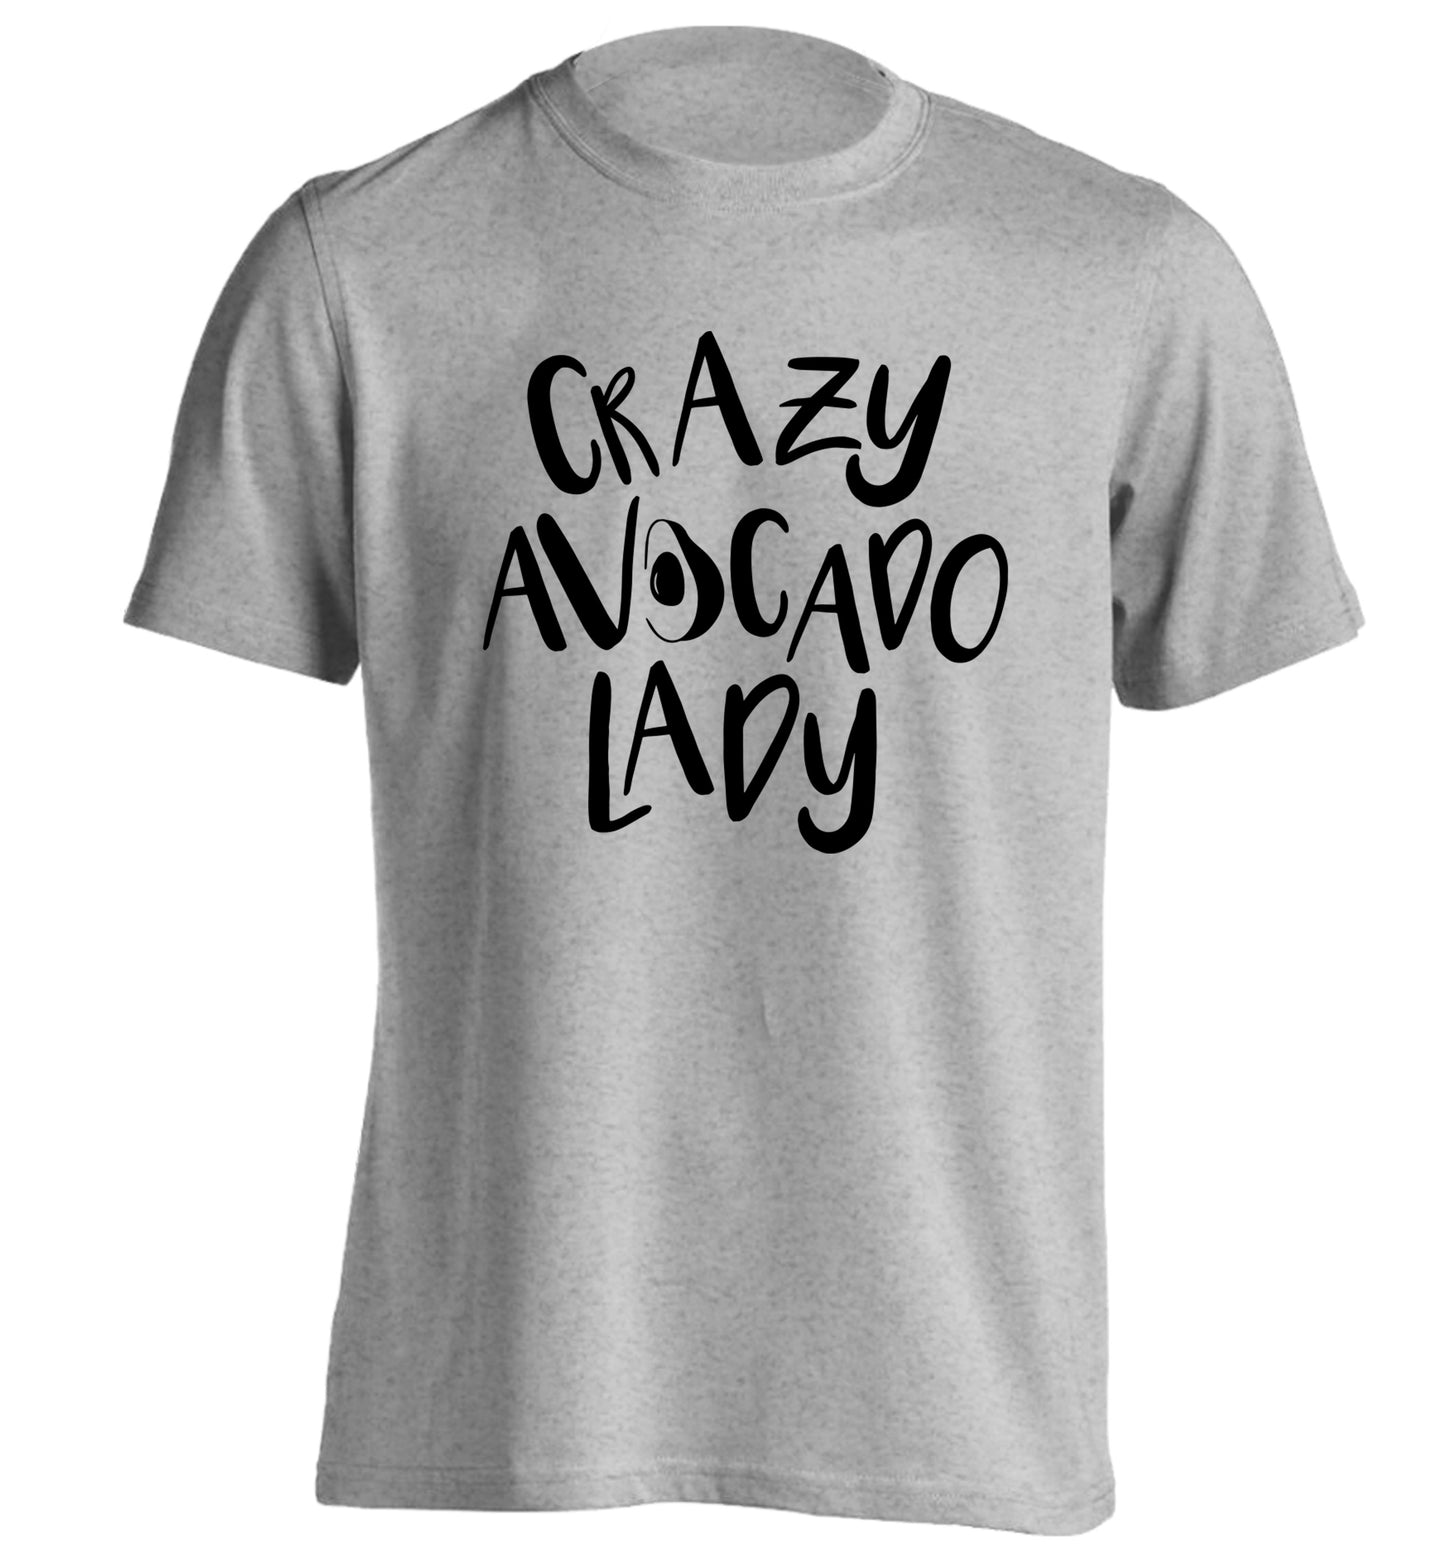 Crazy avocado lady adults unisex grey Tshirt 2XL